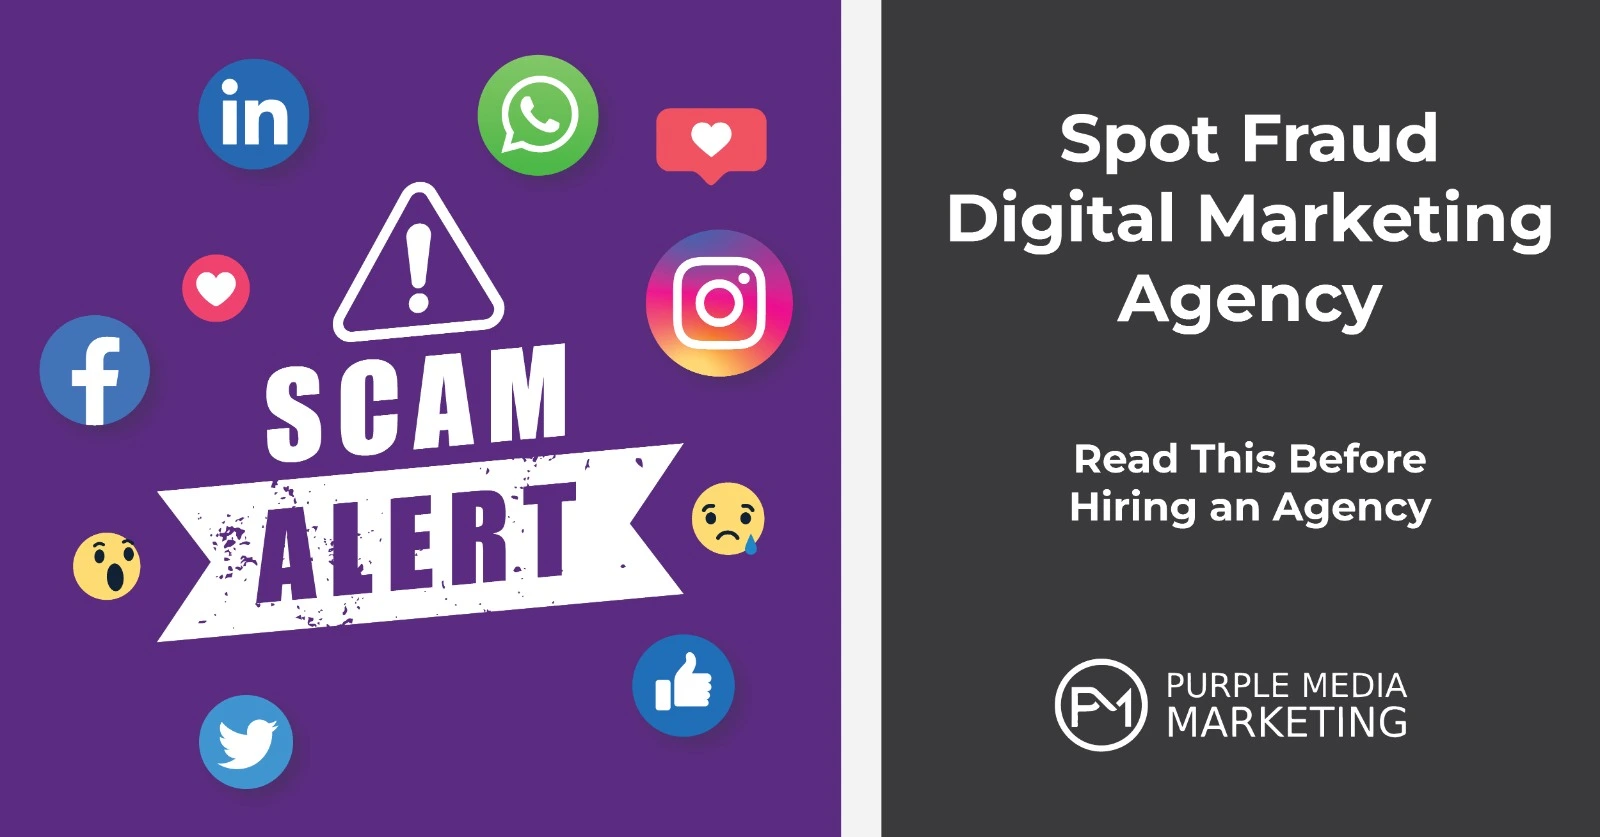 Spot Fraud Digital Marketing Agency